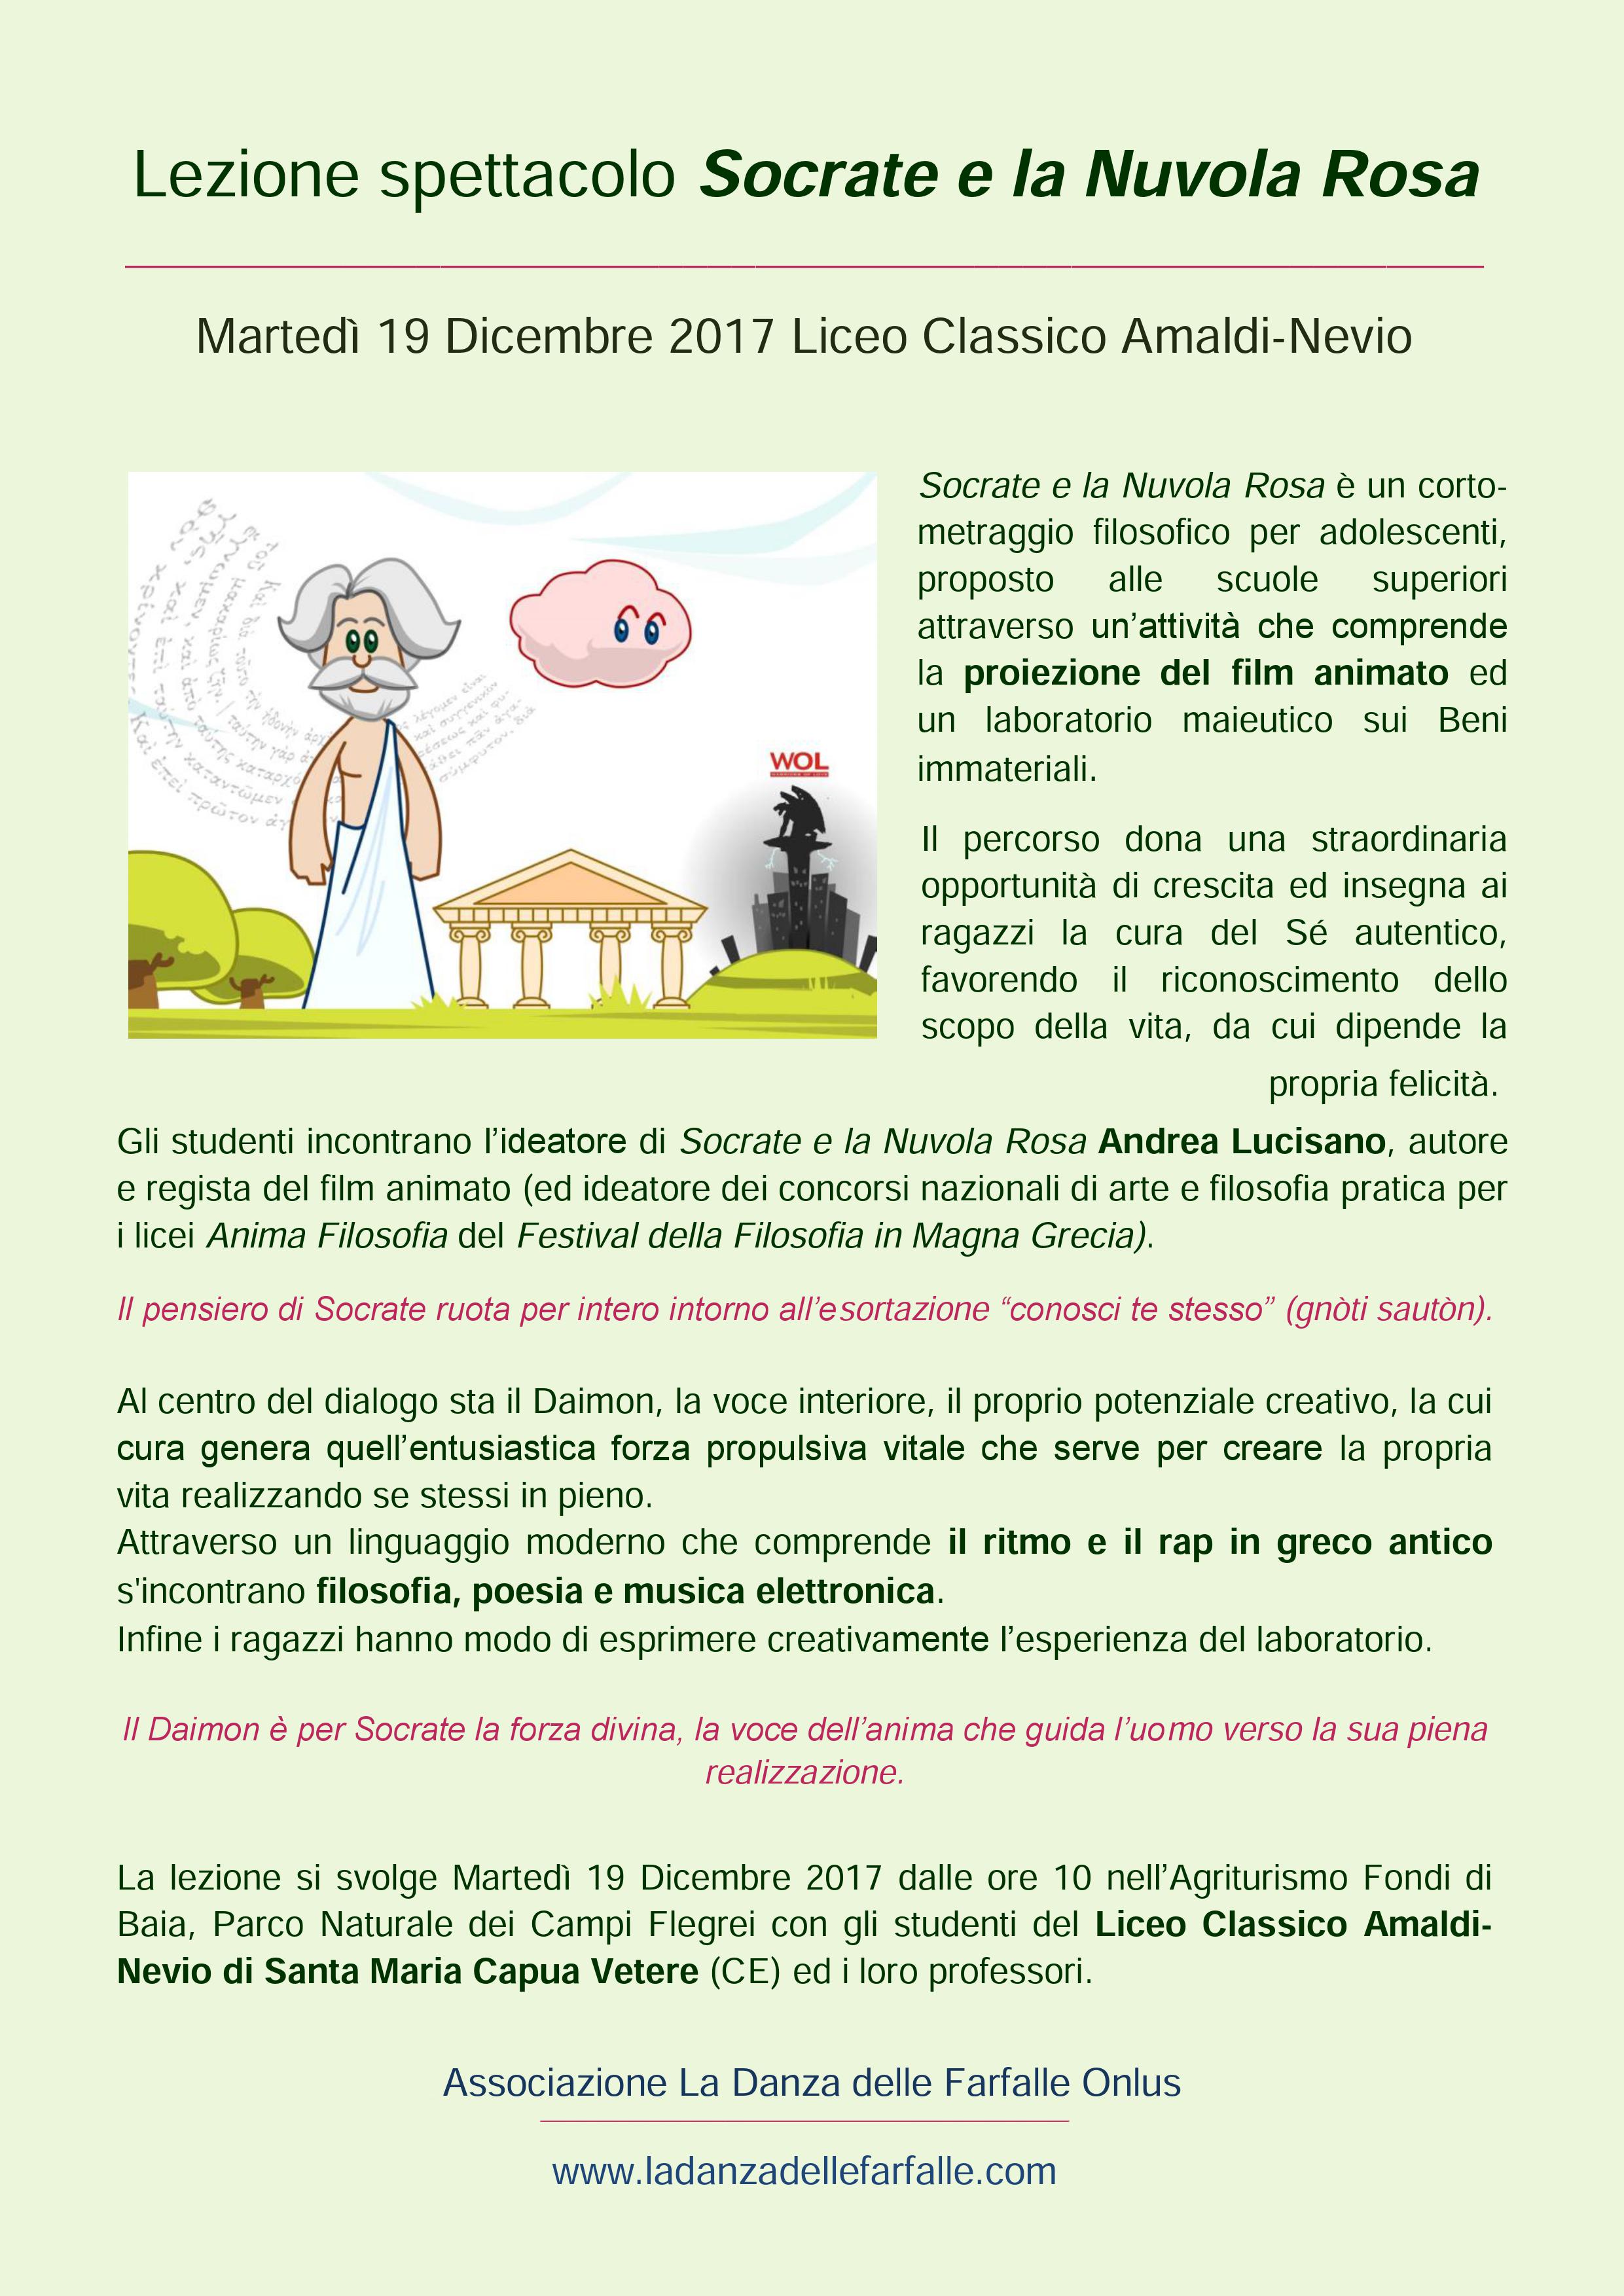 Socrate e la Nuvola Rosa Laboratorio di Filosofia pratica comunicato stampa Liceo Classico Amaldi-Nevio CE